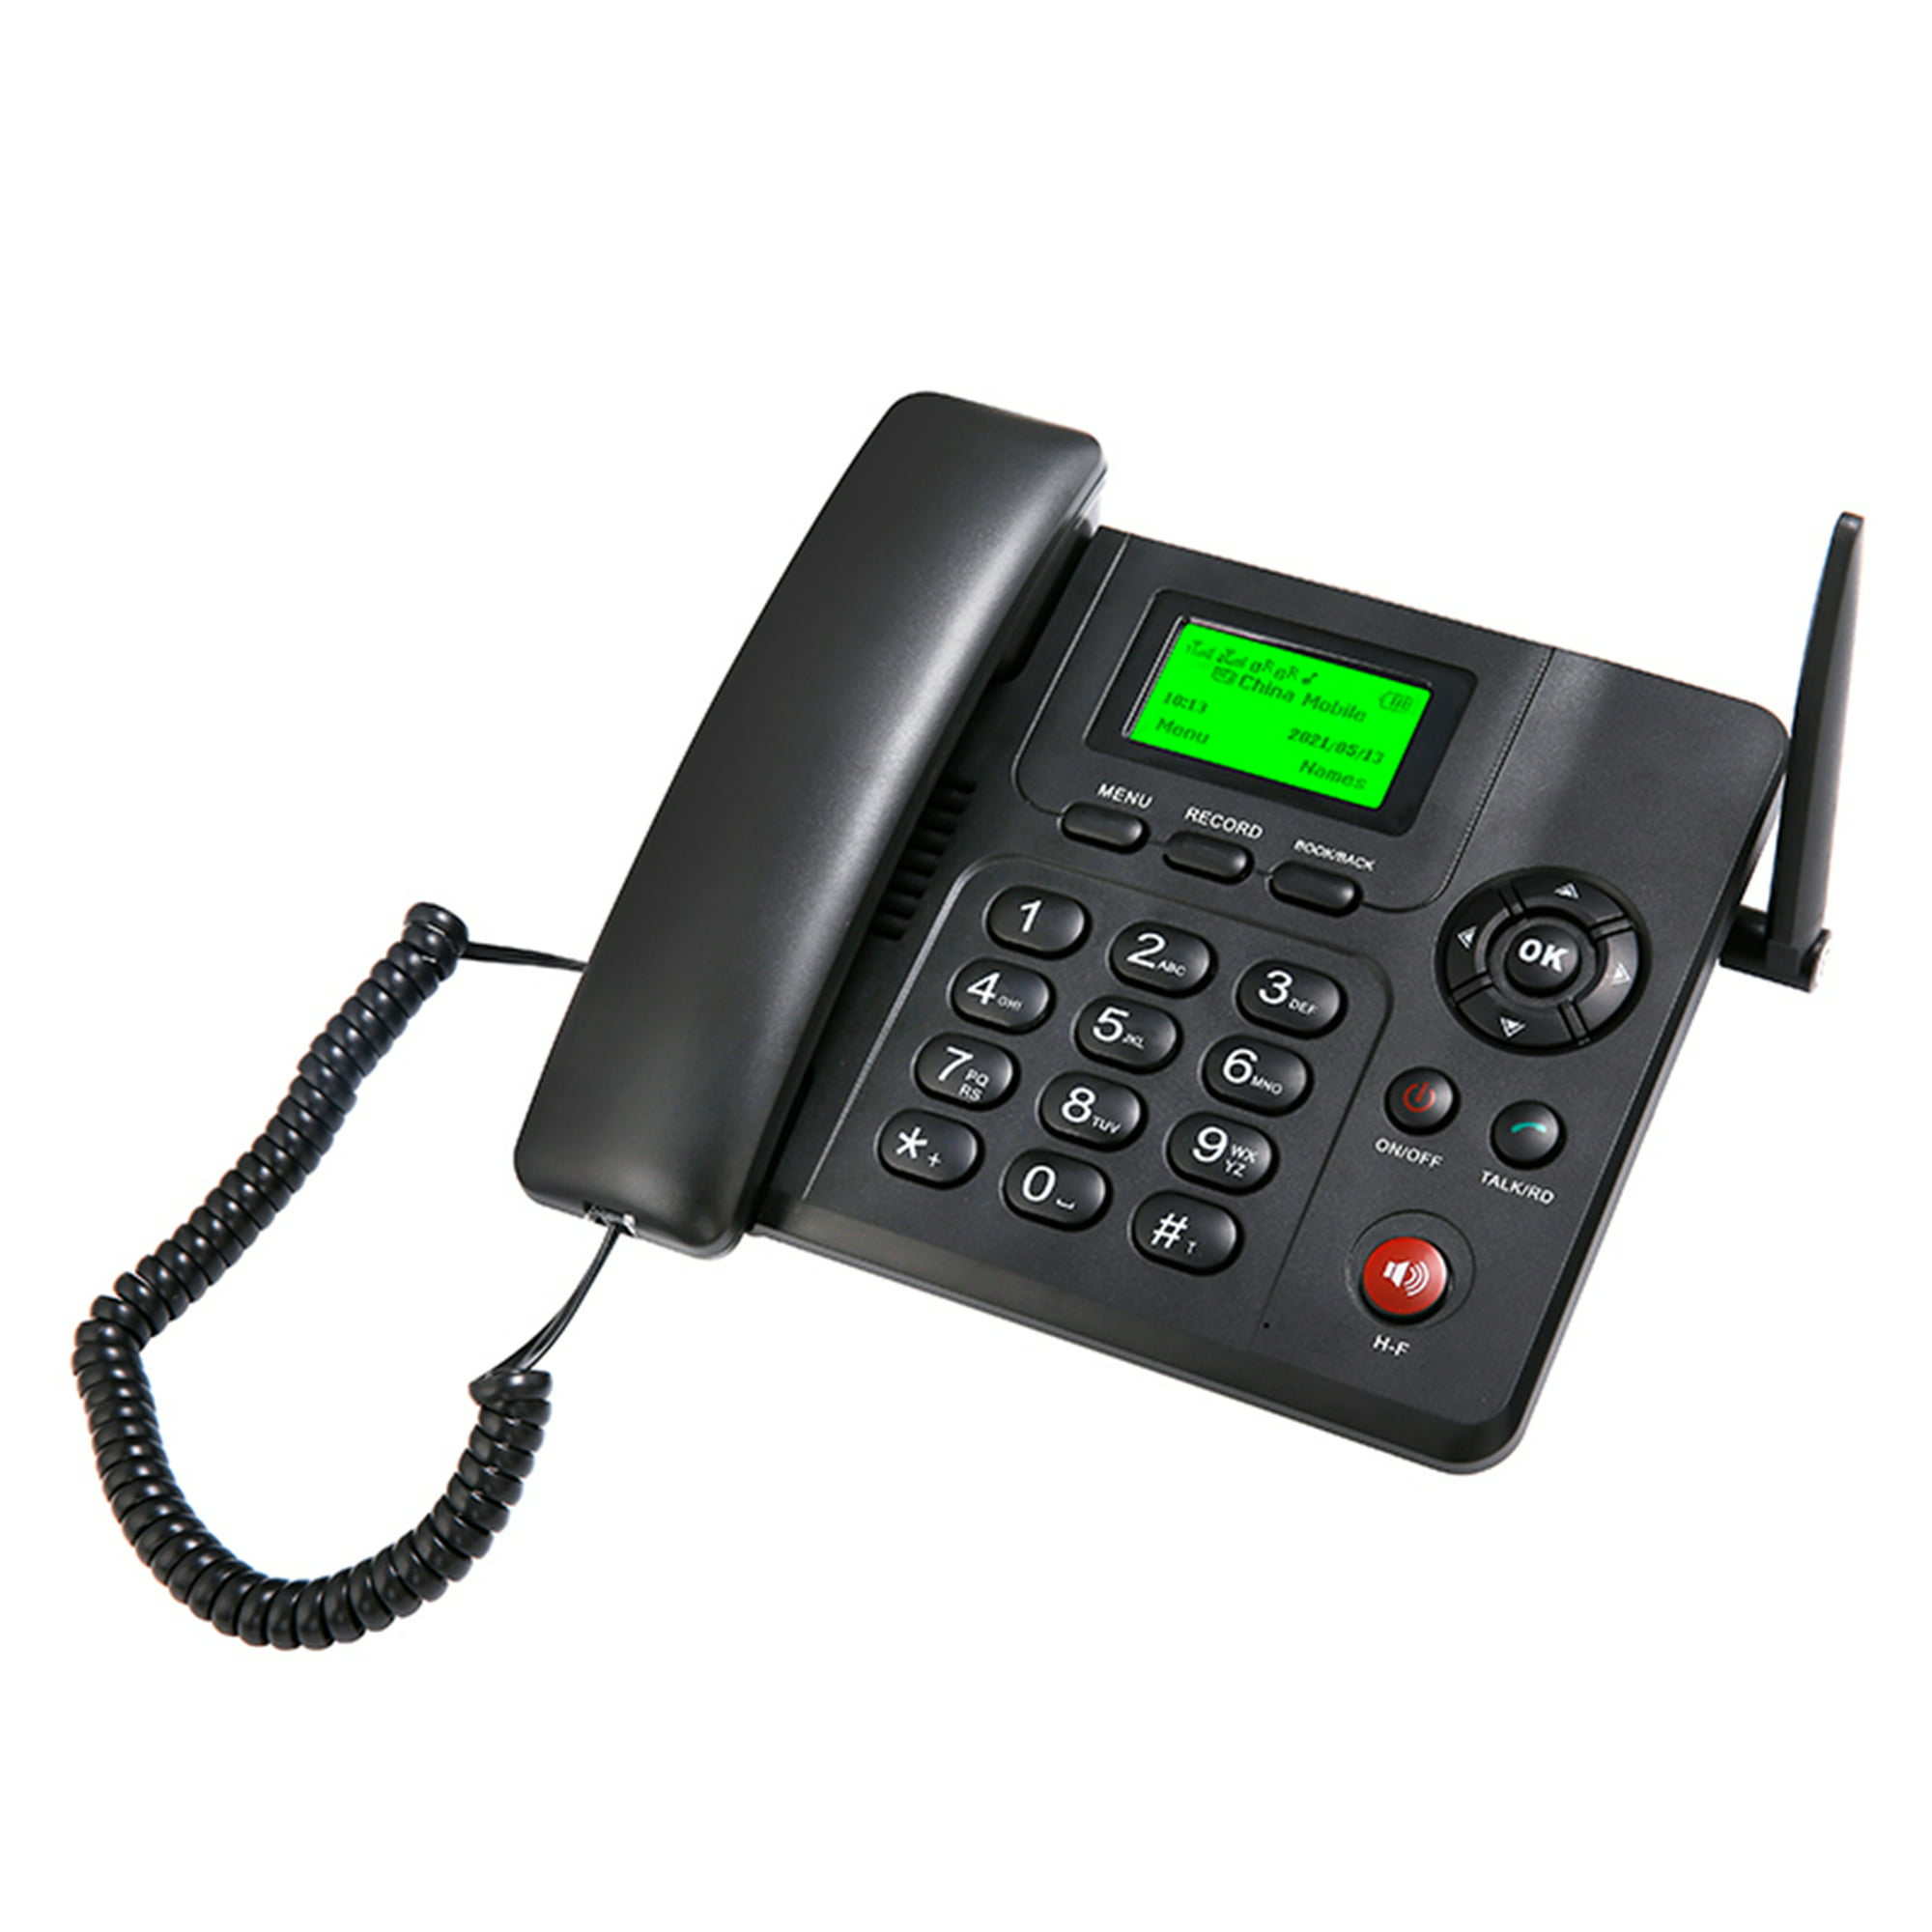 Teléfono fijo inalámbrico Soporte de teléfono de escritorio GSM